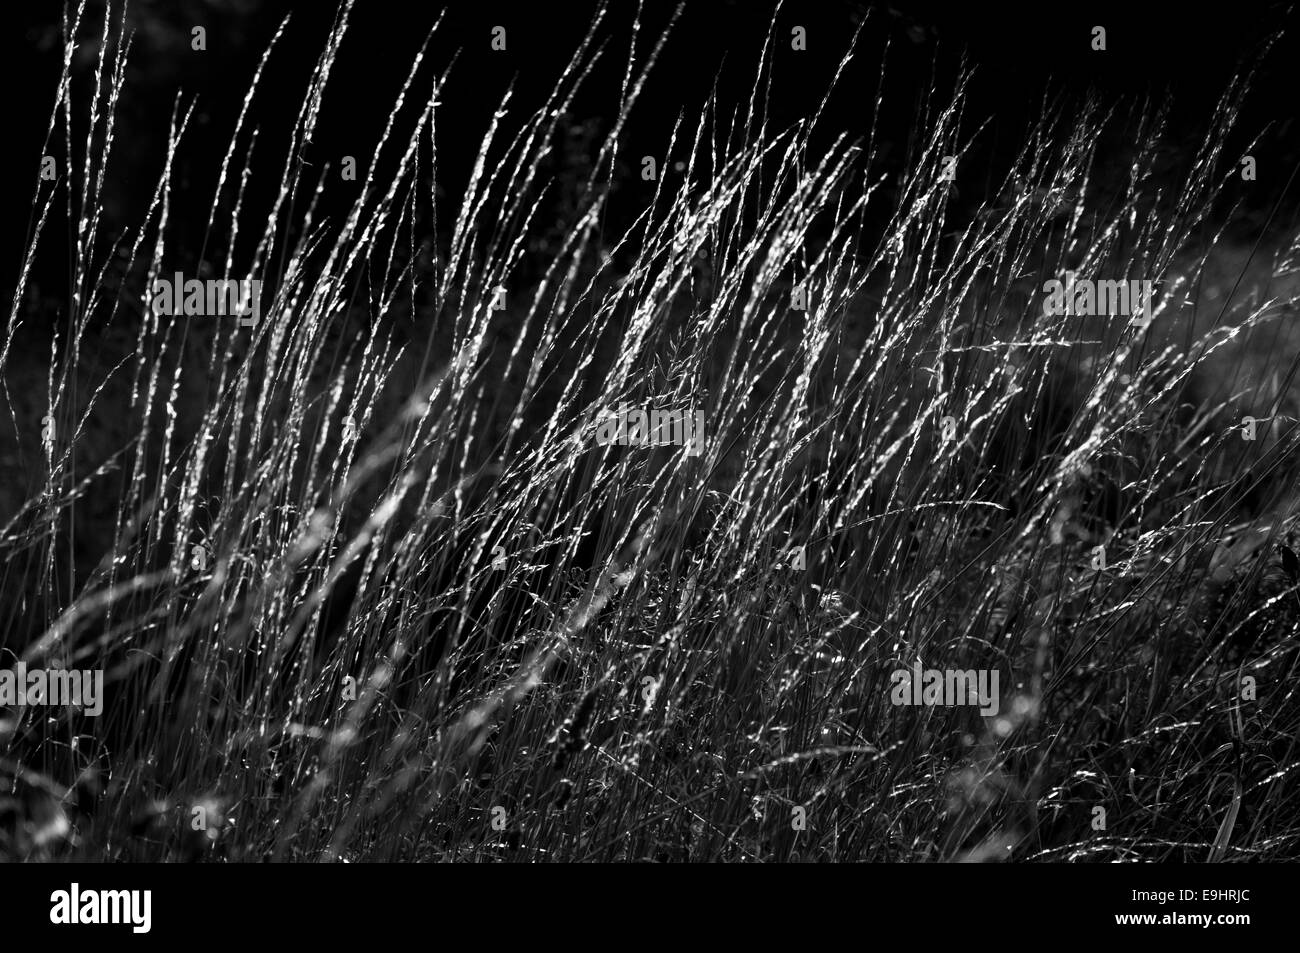 Abstract di brughiera erbe, retro illuminata con sfondo scuro. Le linee sottili. Convertito in bianco e nero. Foto Stock